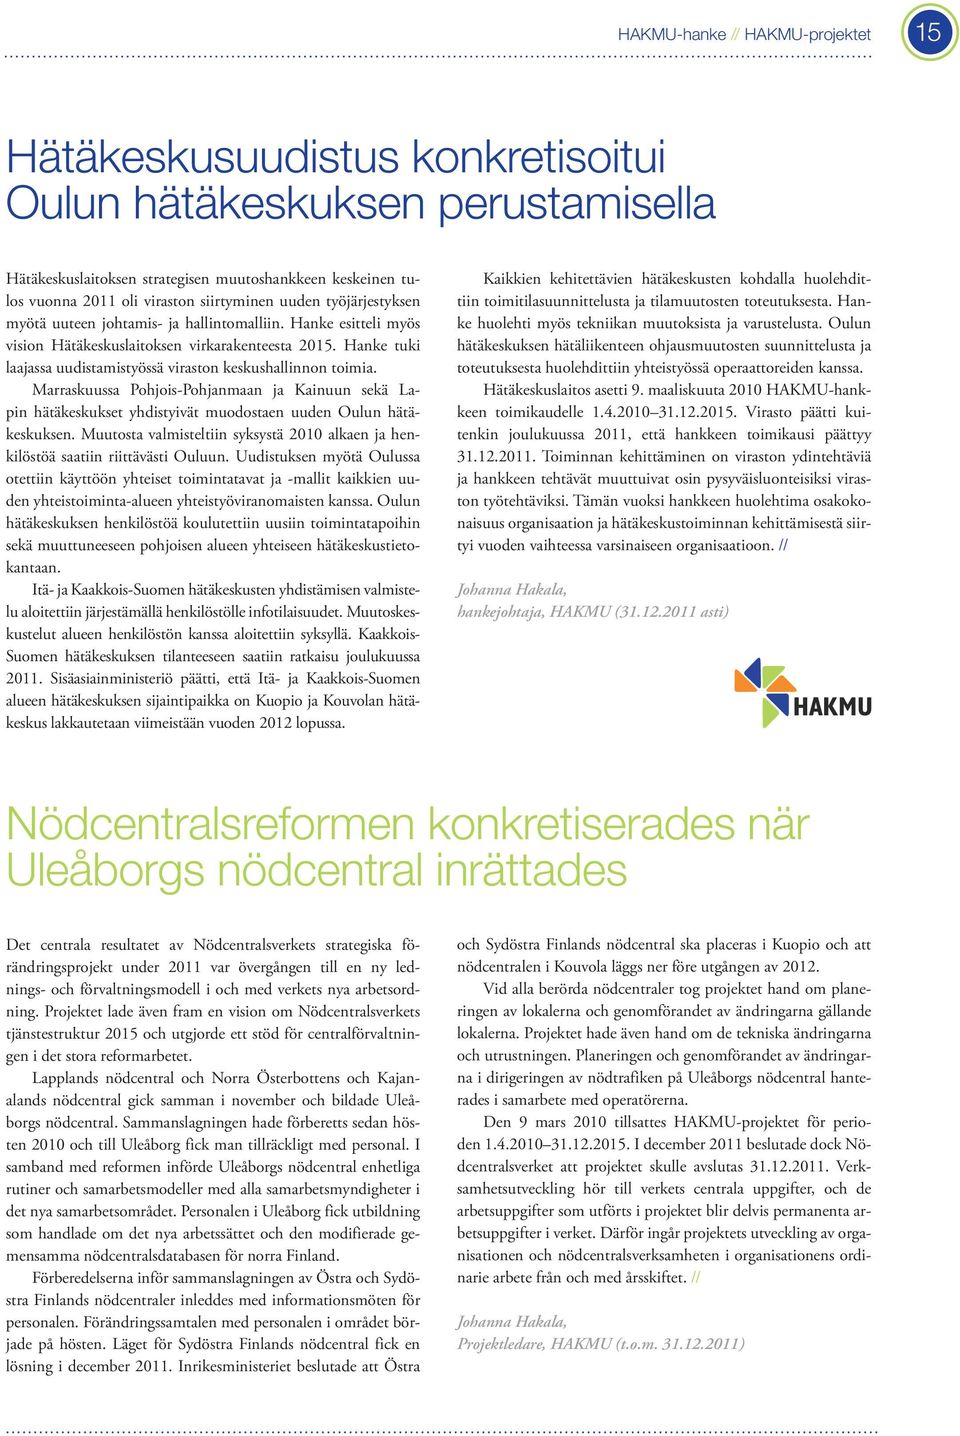 Hanke tuki laajassa uudistamistyössä viraston keskushallinnon toimia. Marraskuussa Pohjois-Pohjanmaan ja Kainuun sekä Lapin hätäkeskukset yhdistyivät muodostaen uuden Oulun hätäkeskuksen.